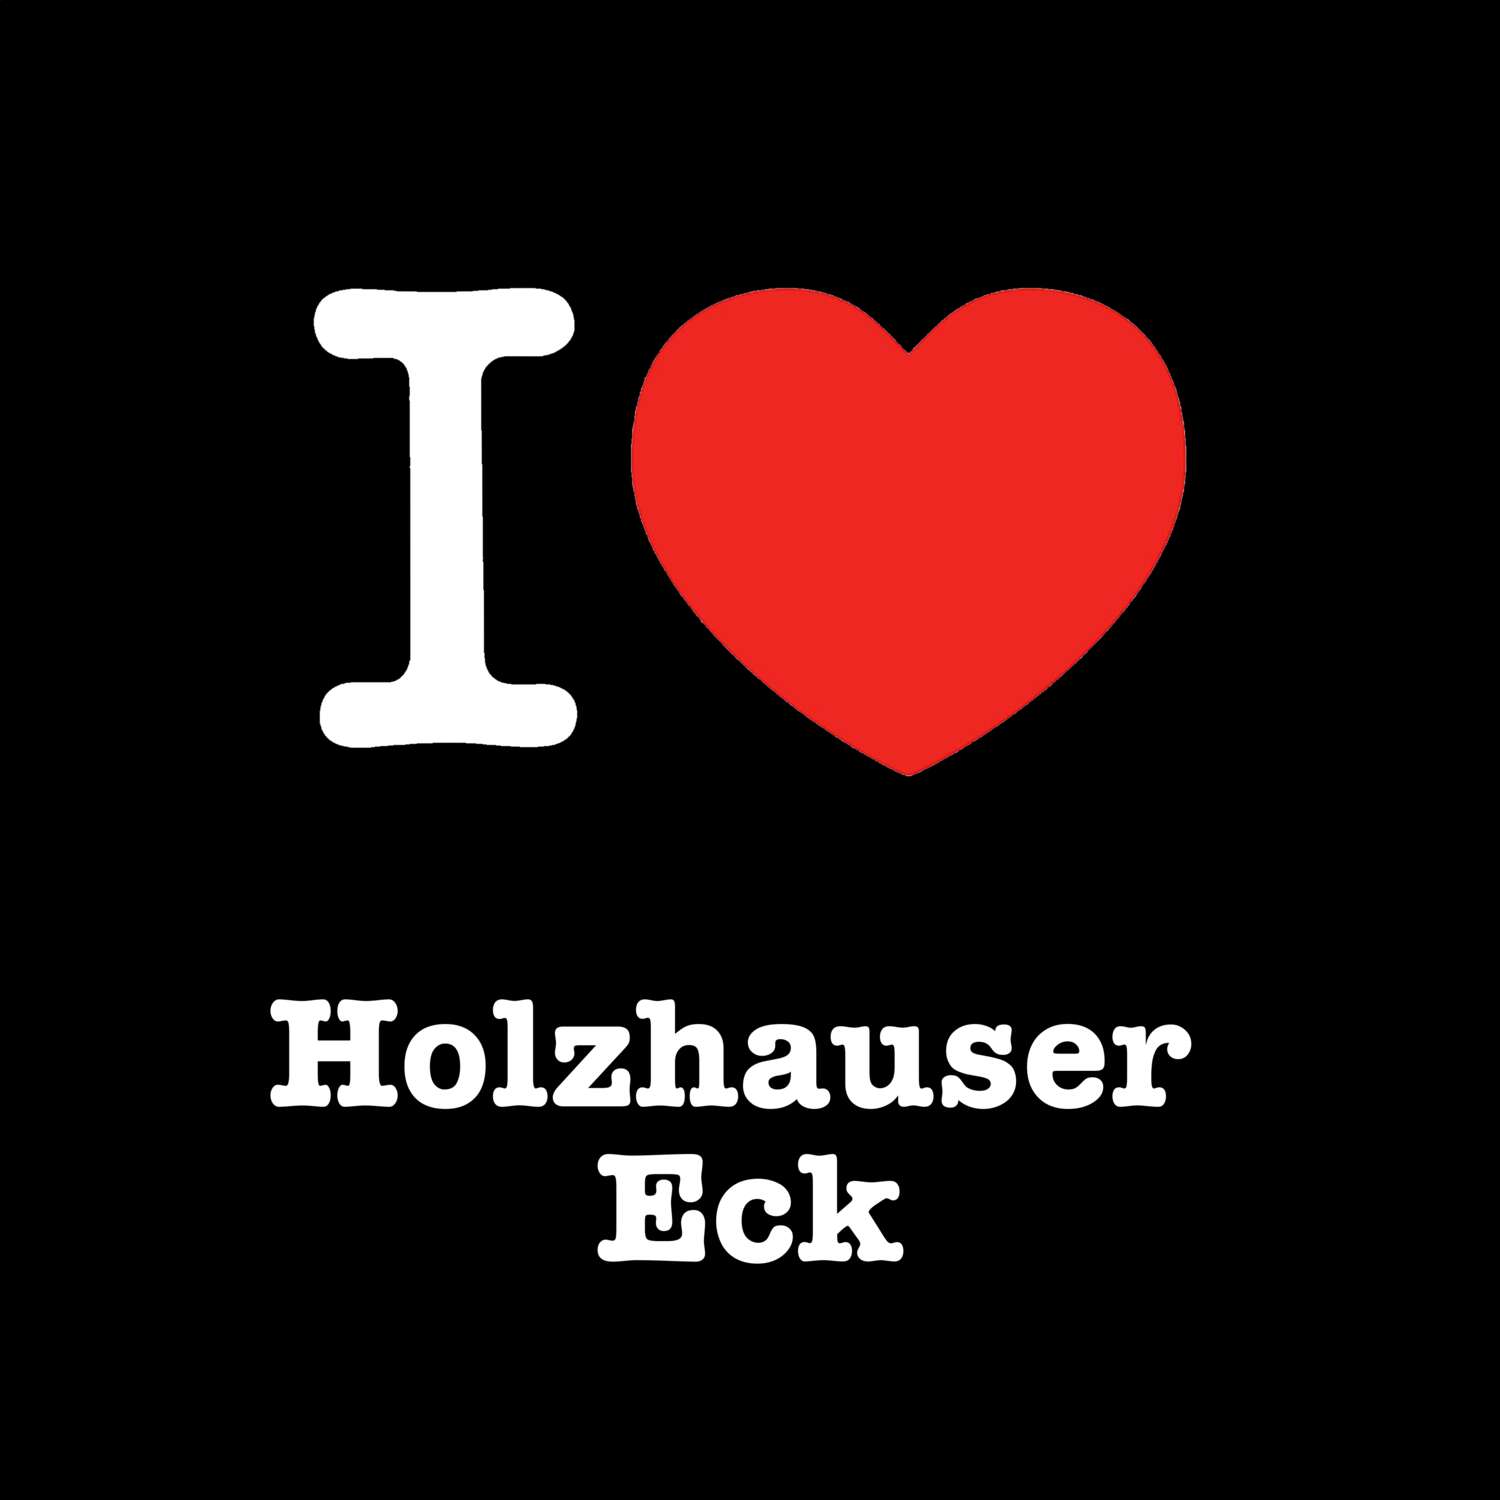 Holzhauser Eck T-Shirt »I love«